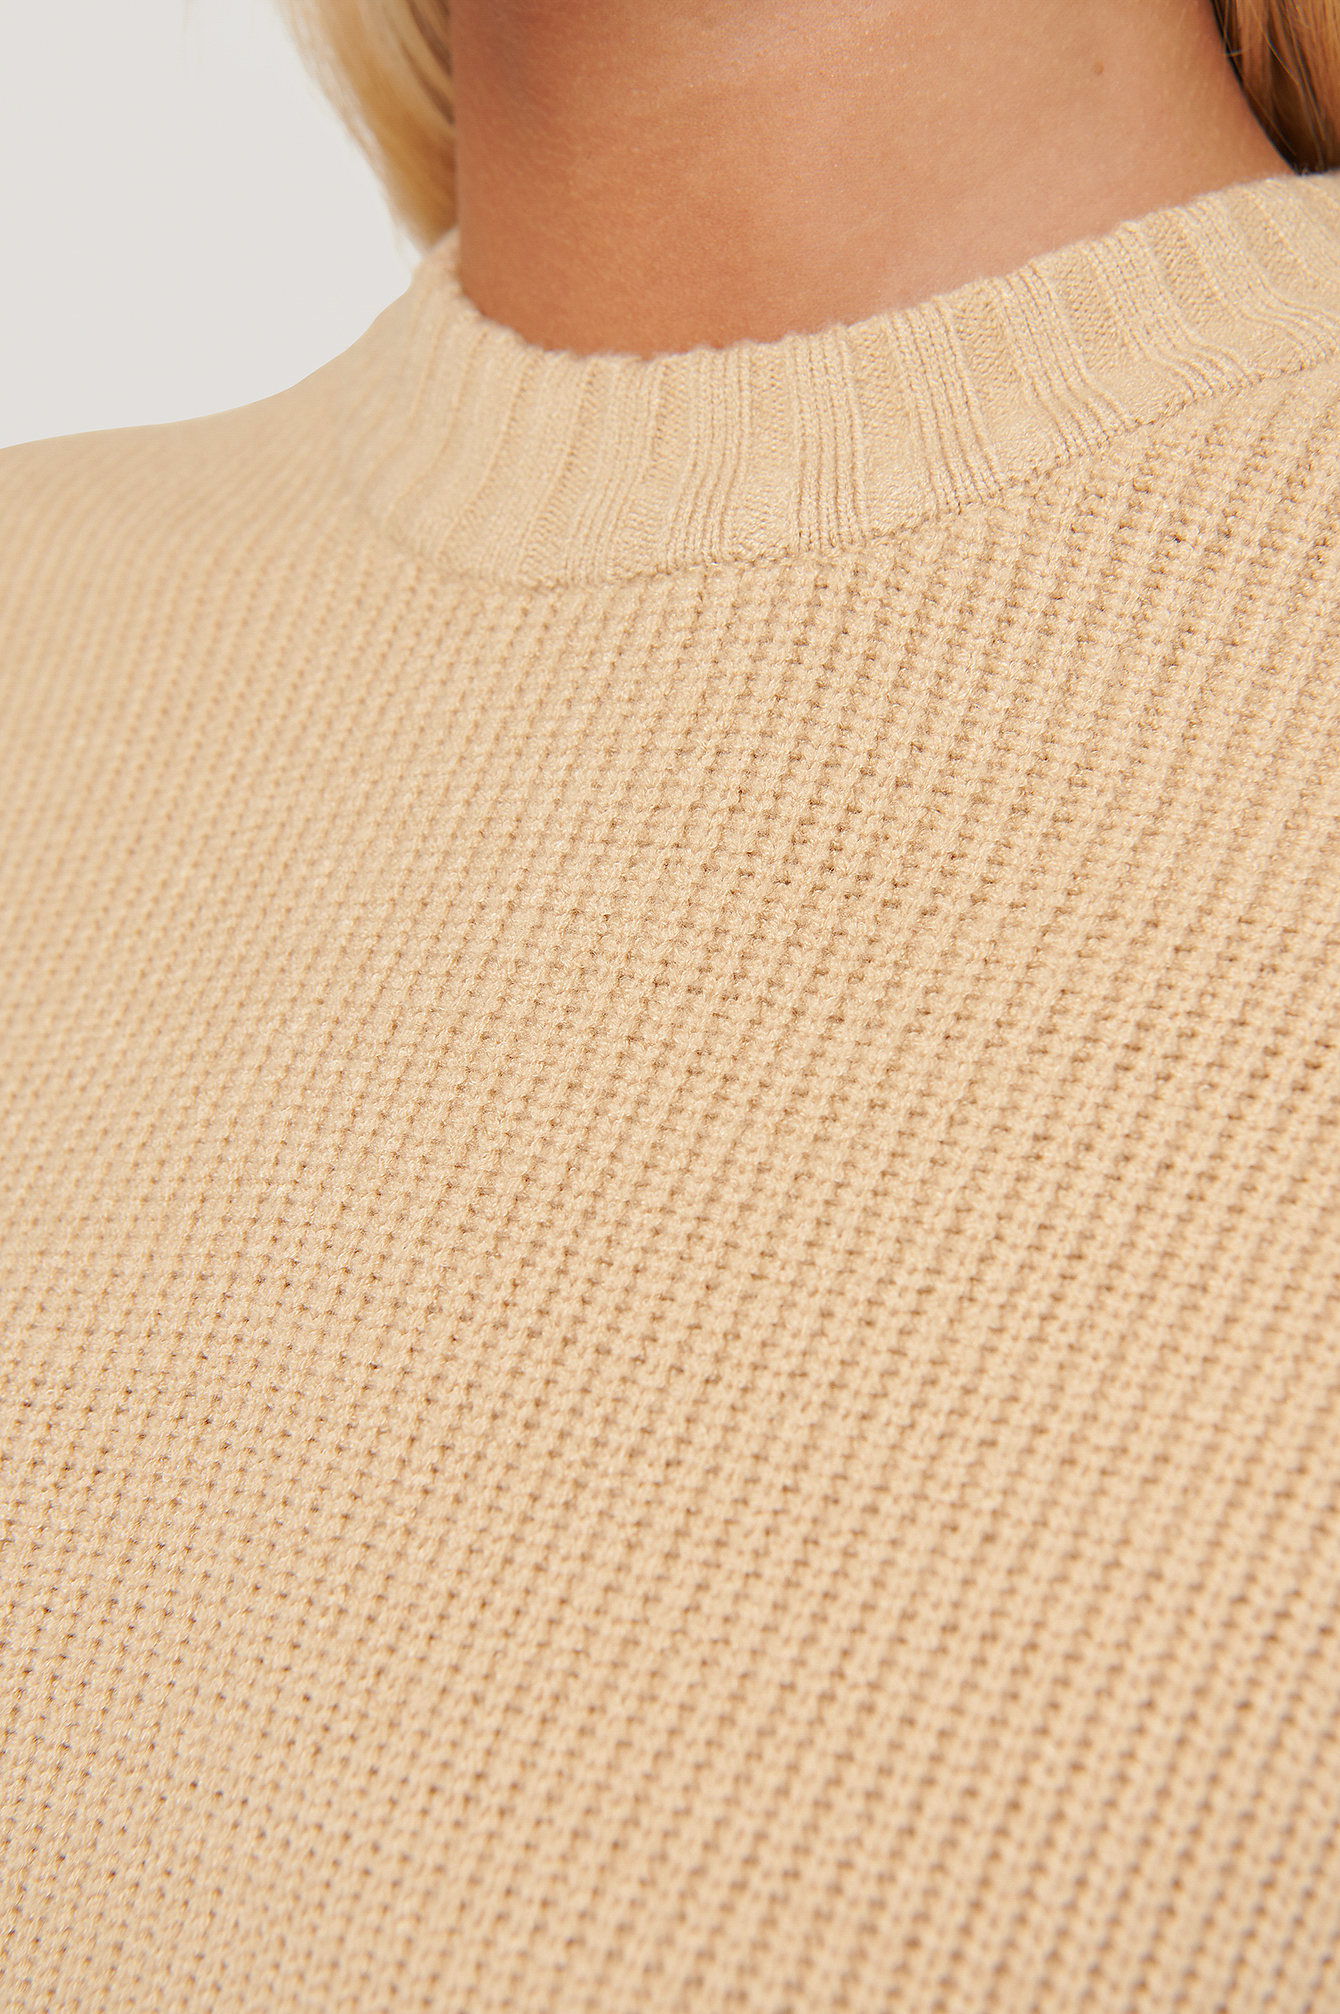 Beige Round Neck Knitted Sweater